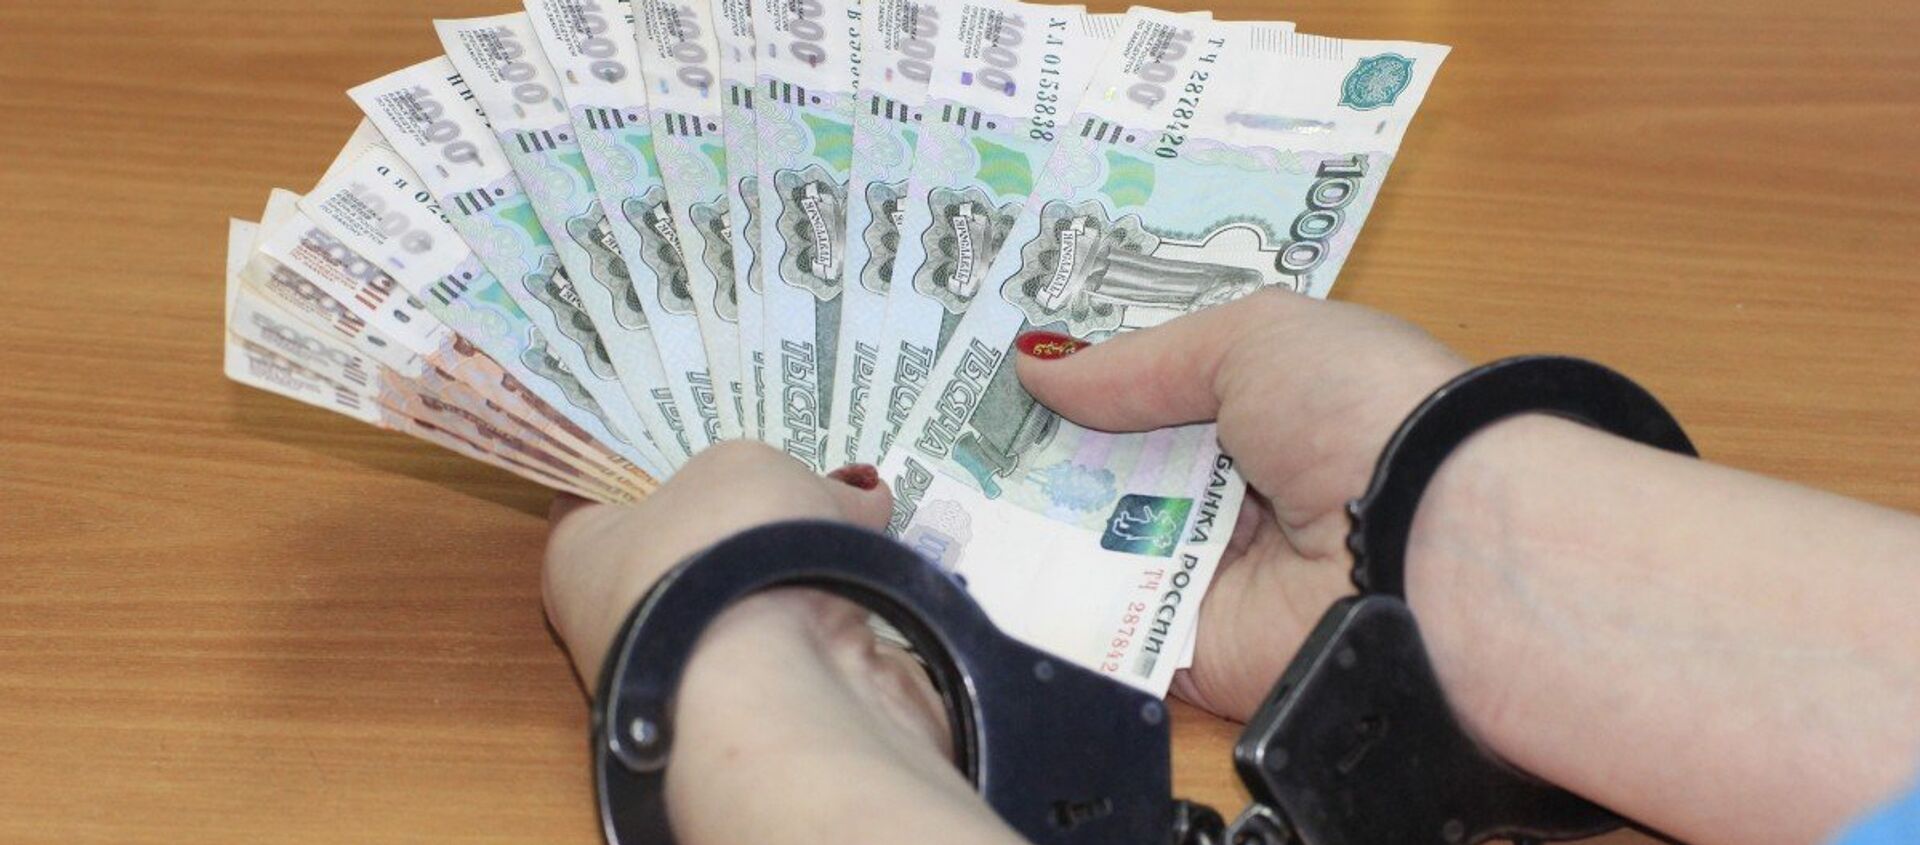 Российские рубли в руках у женщины - Sputnik Узбекистан, 1920, 03.05.2018